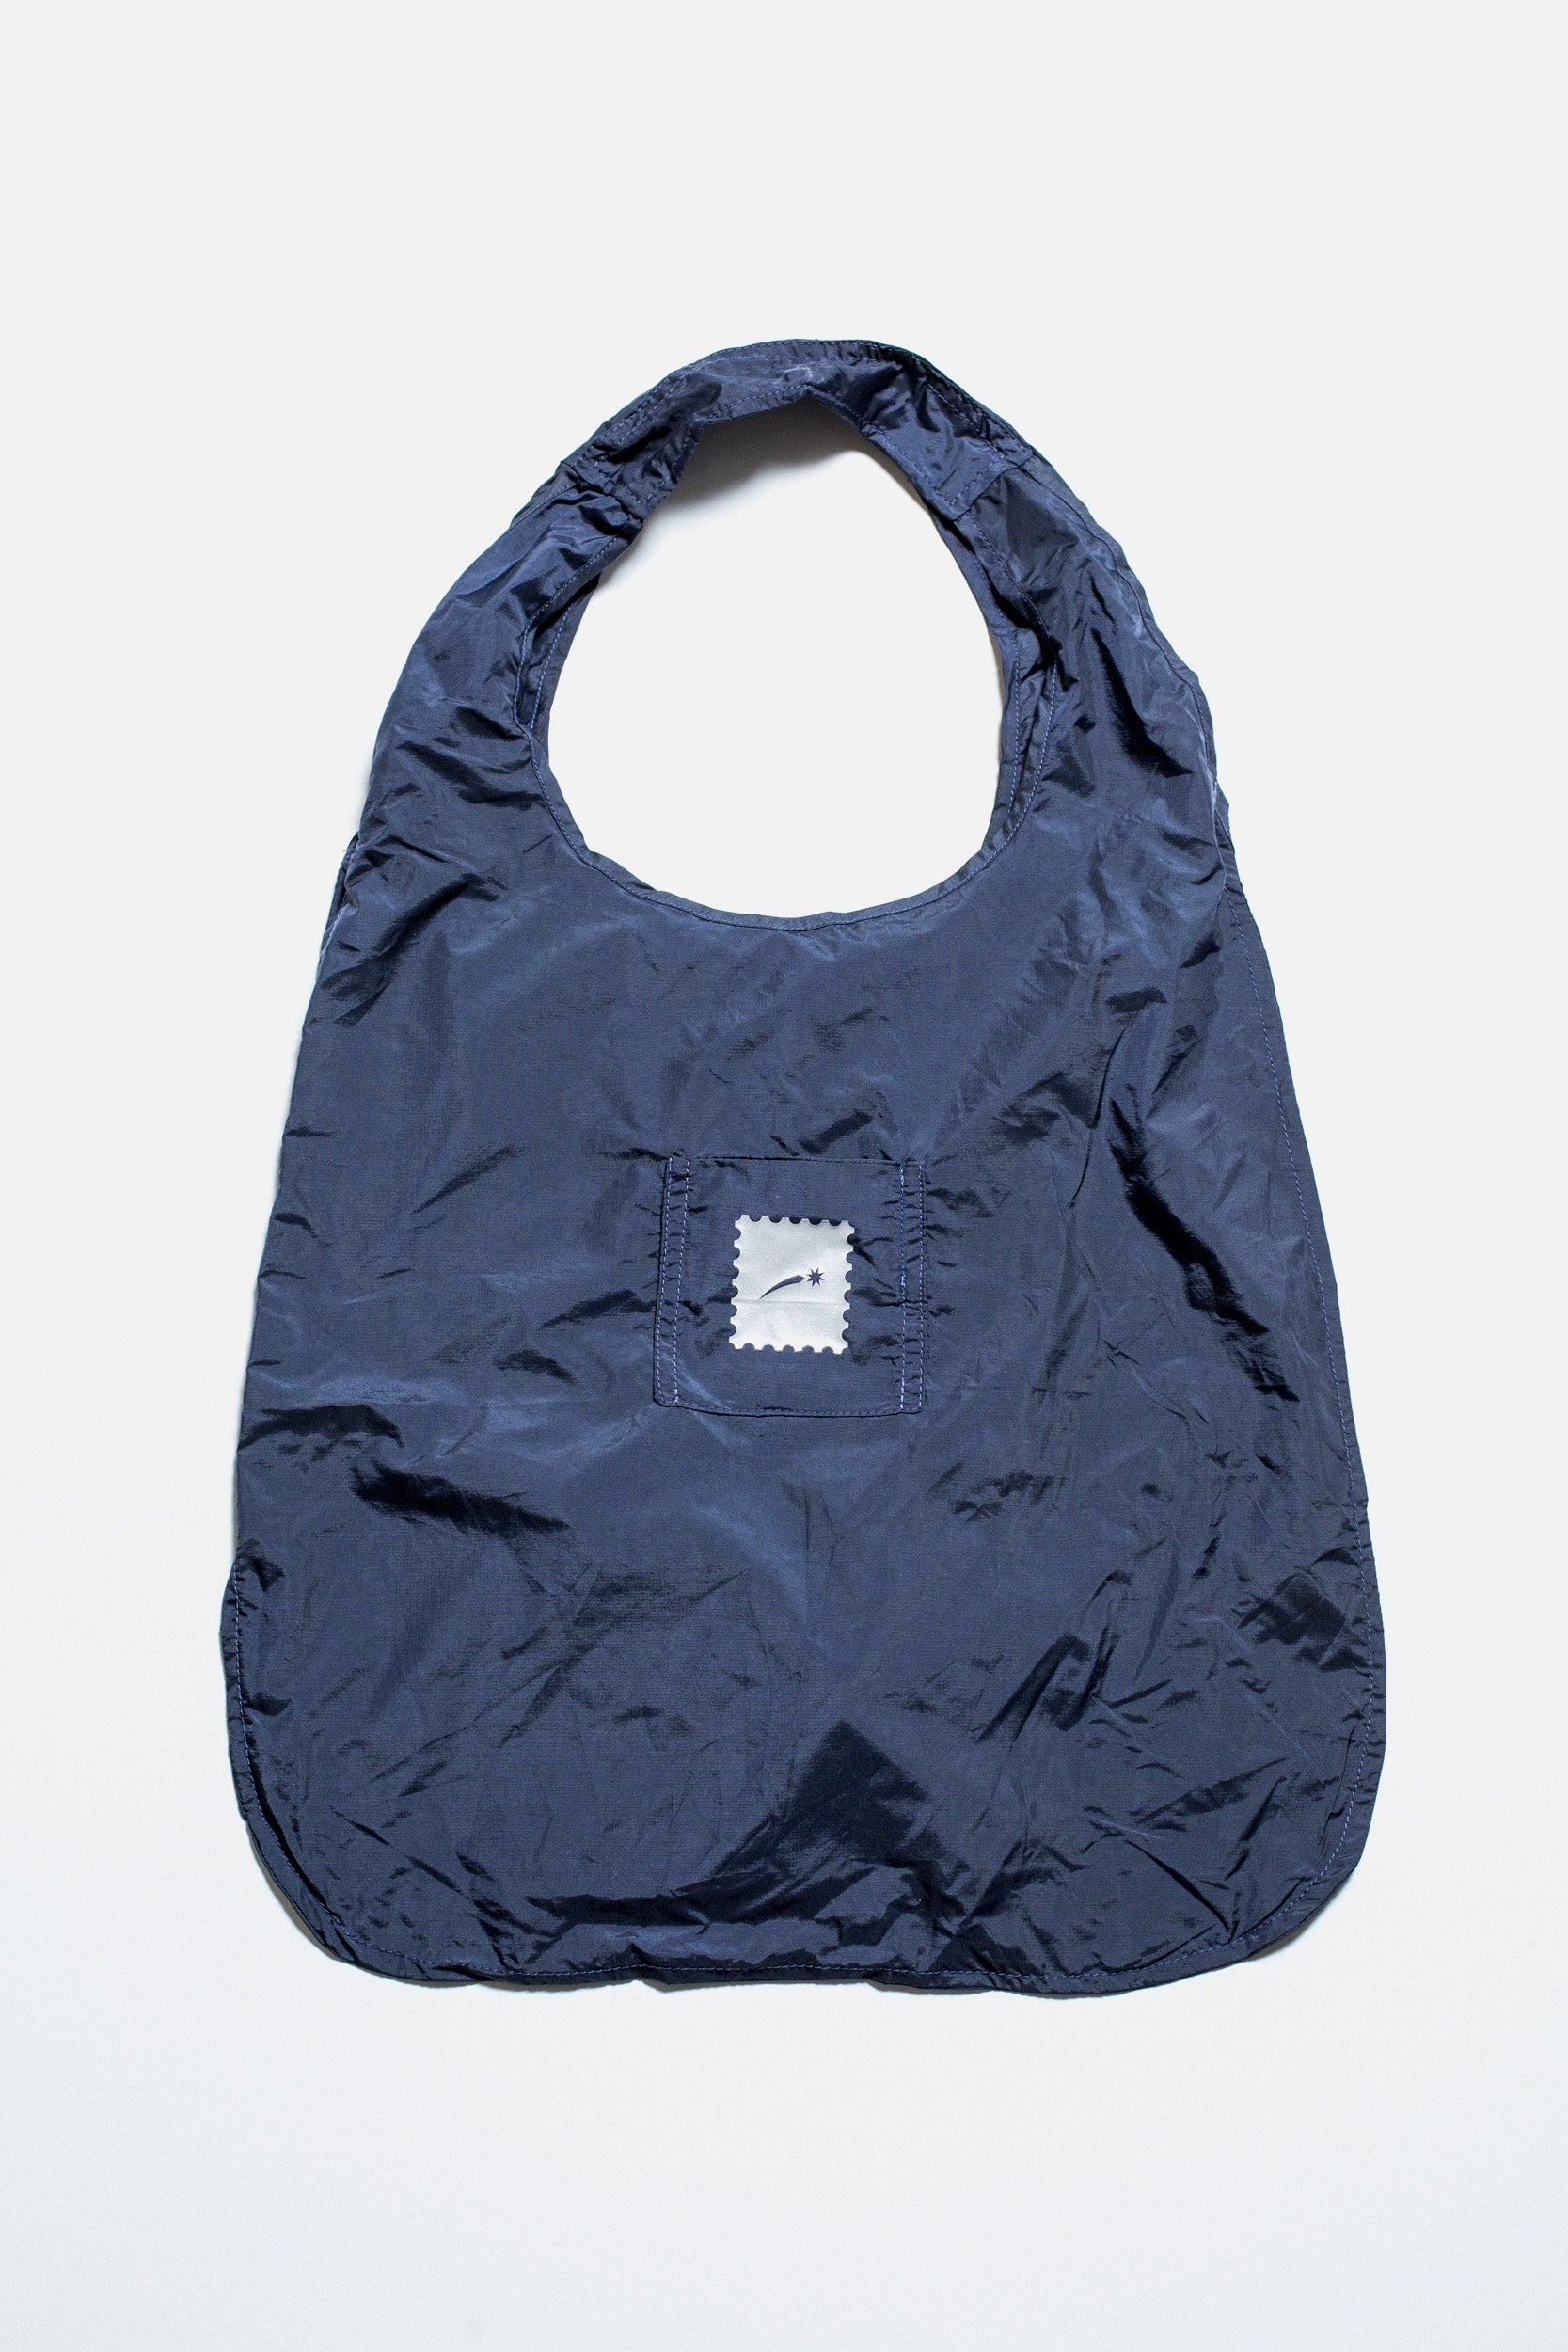 Pixie Packable Tote bag (in Dark navy)